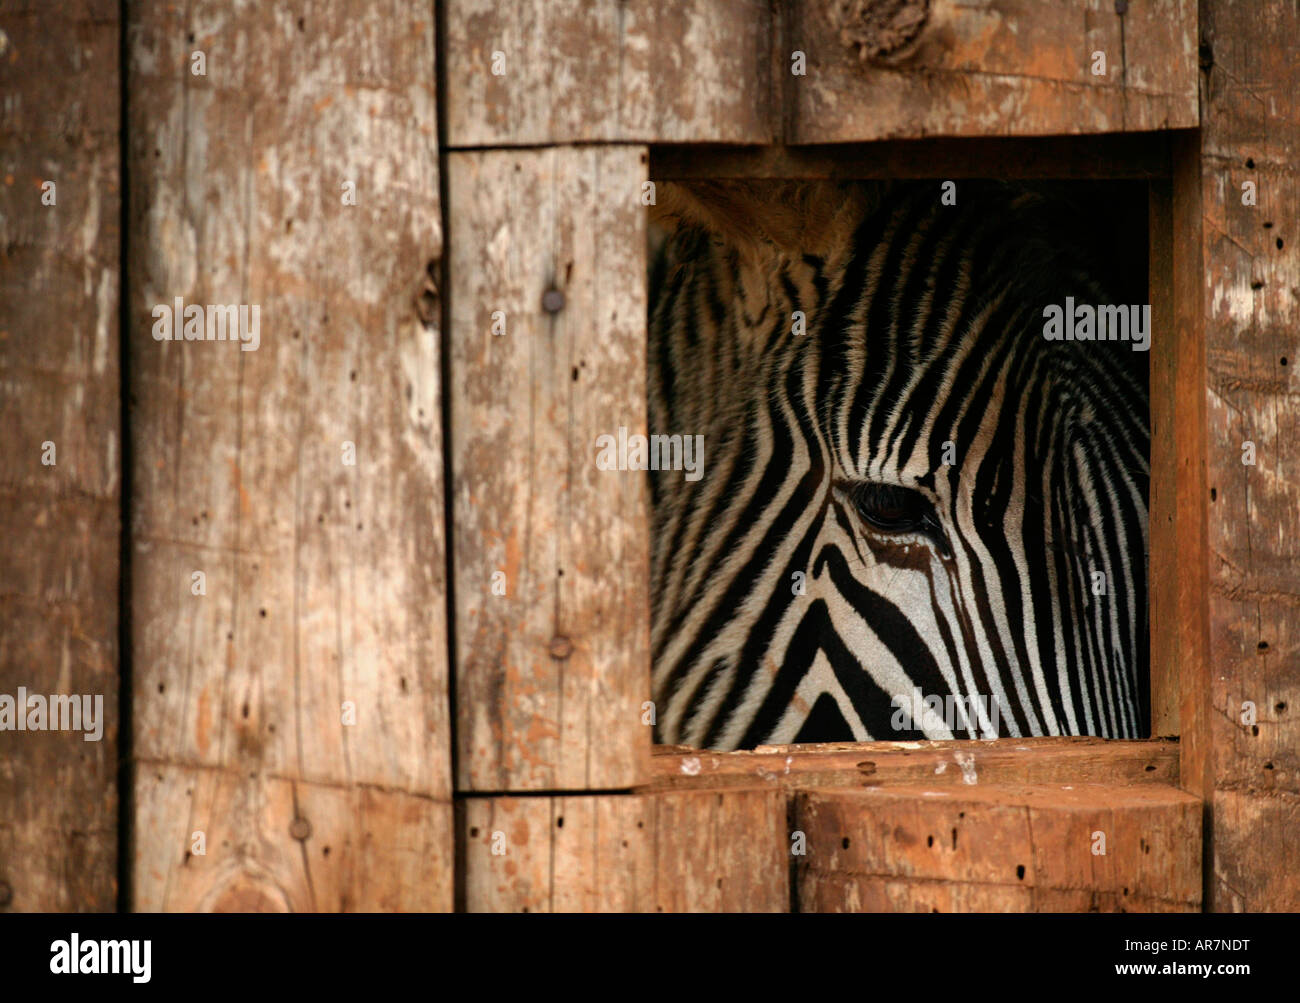 Un zèbre, également connu sous le nom d'Equus zebra zebra, est photographié à la réserve naturelle Cabarceno, près de Santander, dans le nord de l'Espagne Banque D'Images